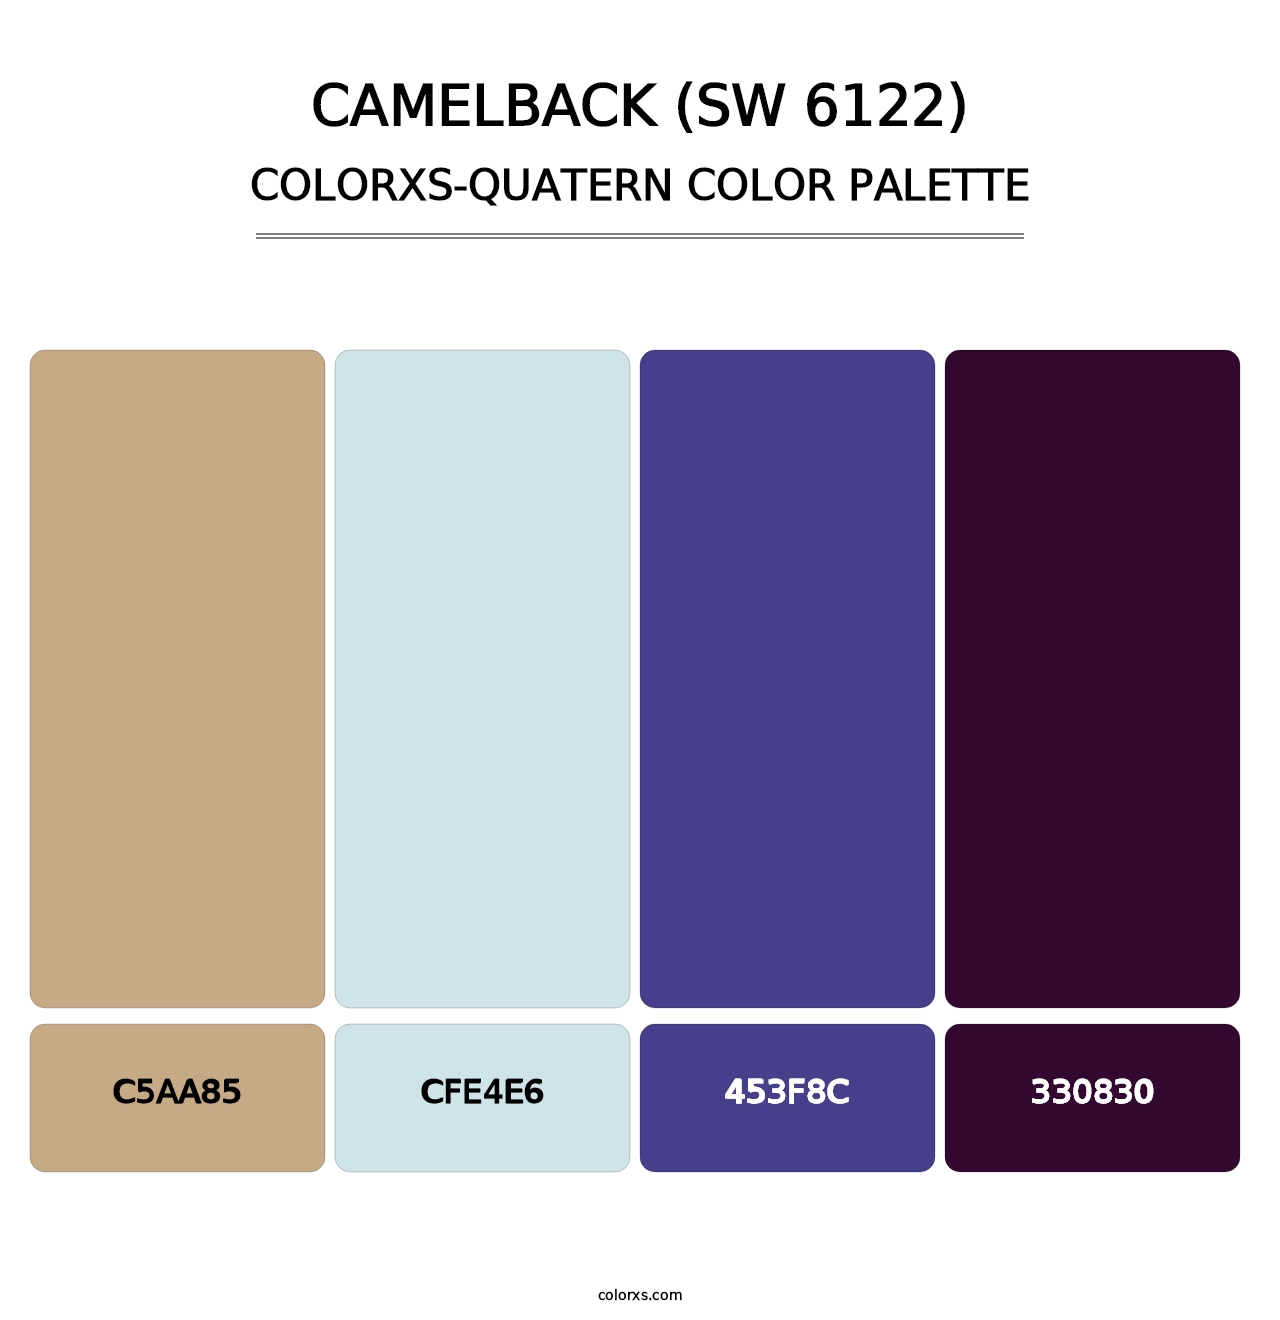 Camelback (SW 6122) - Colorxs Quatern Palette